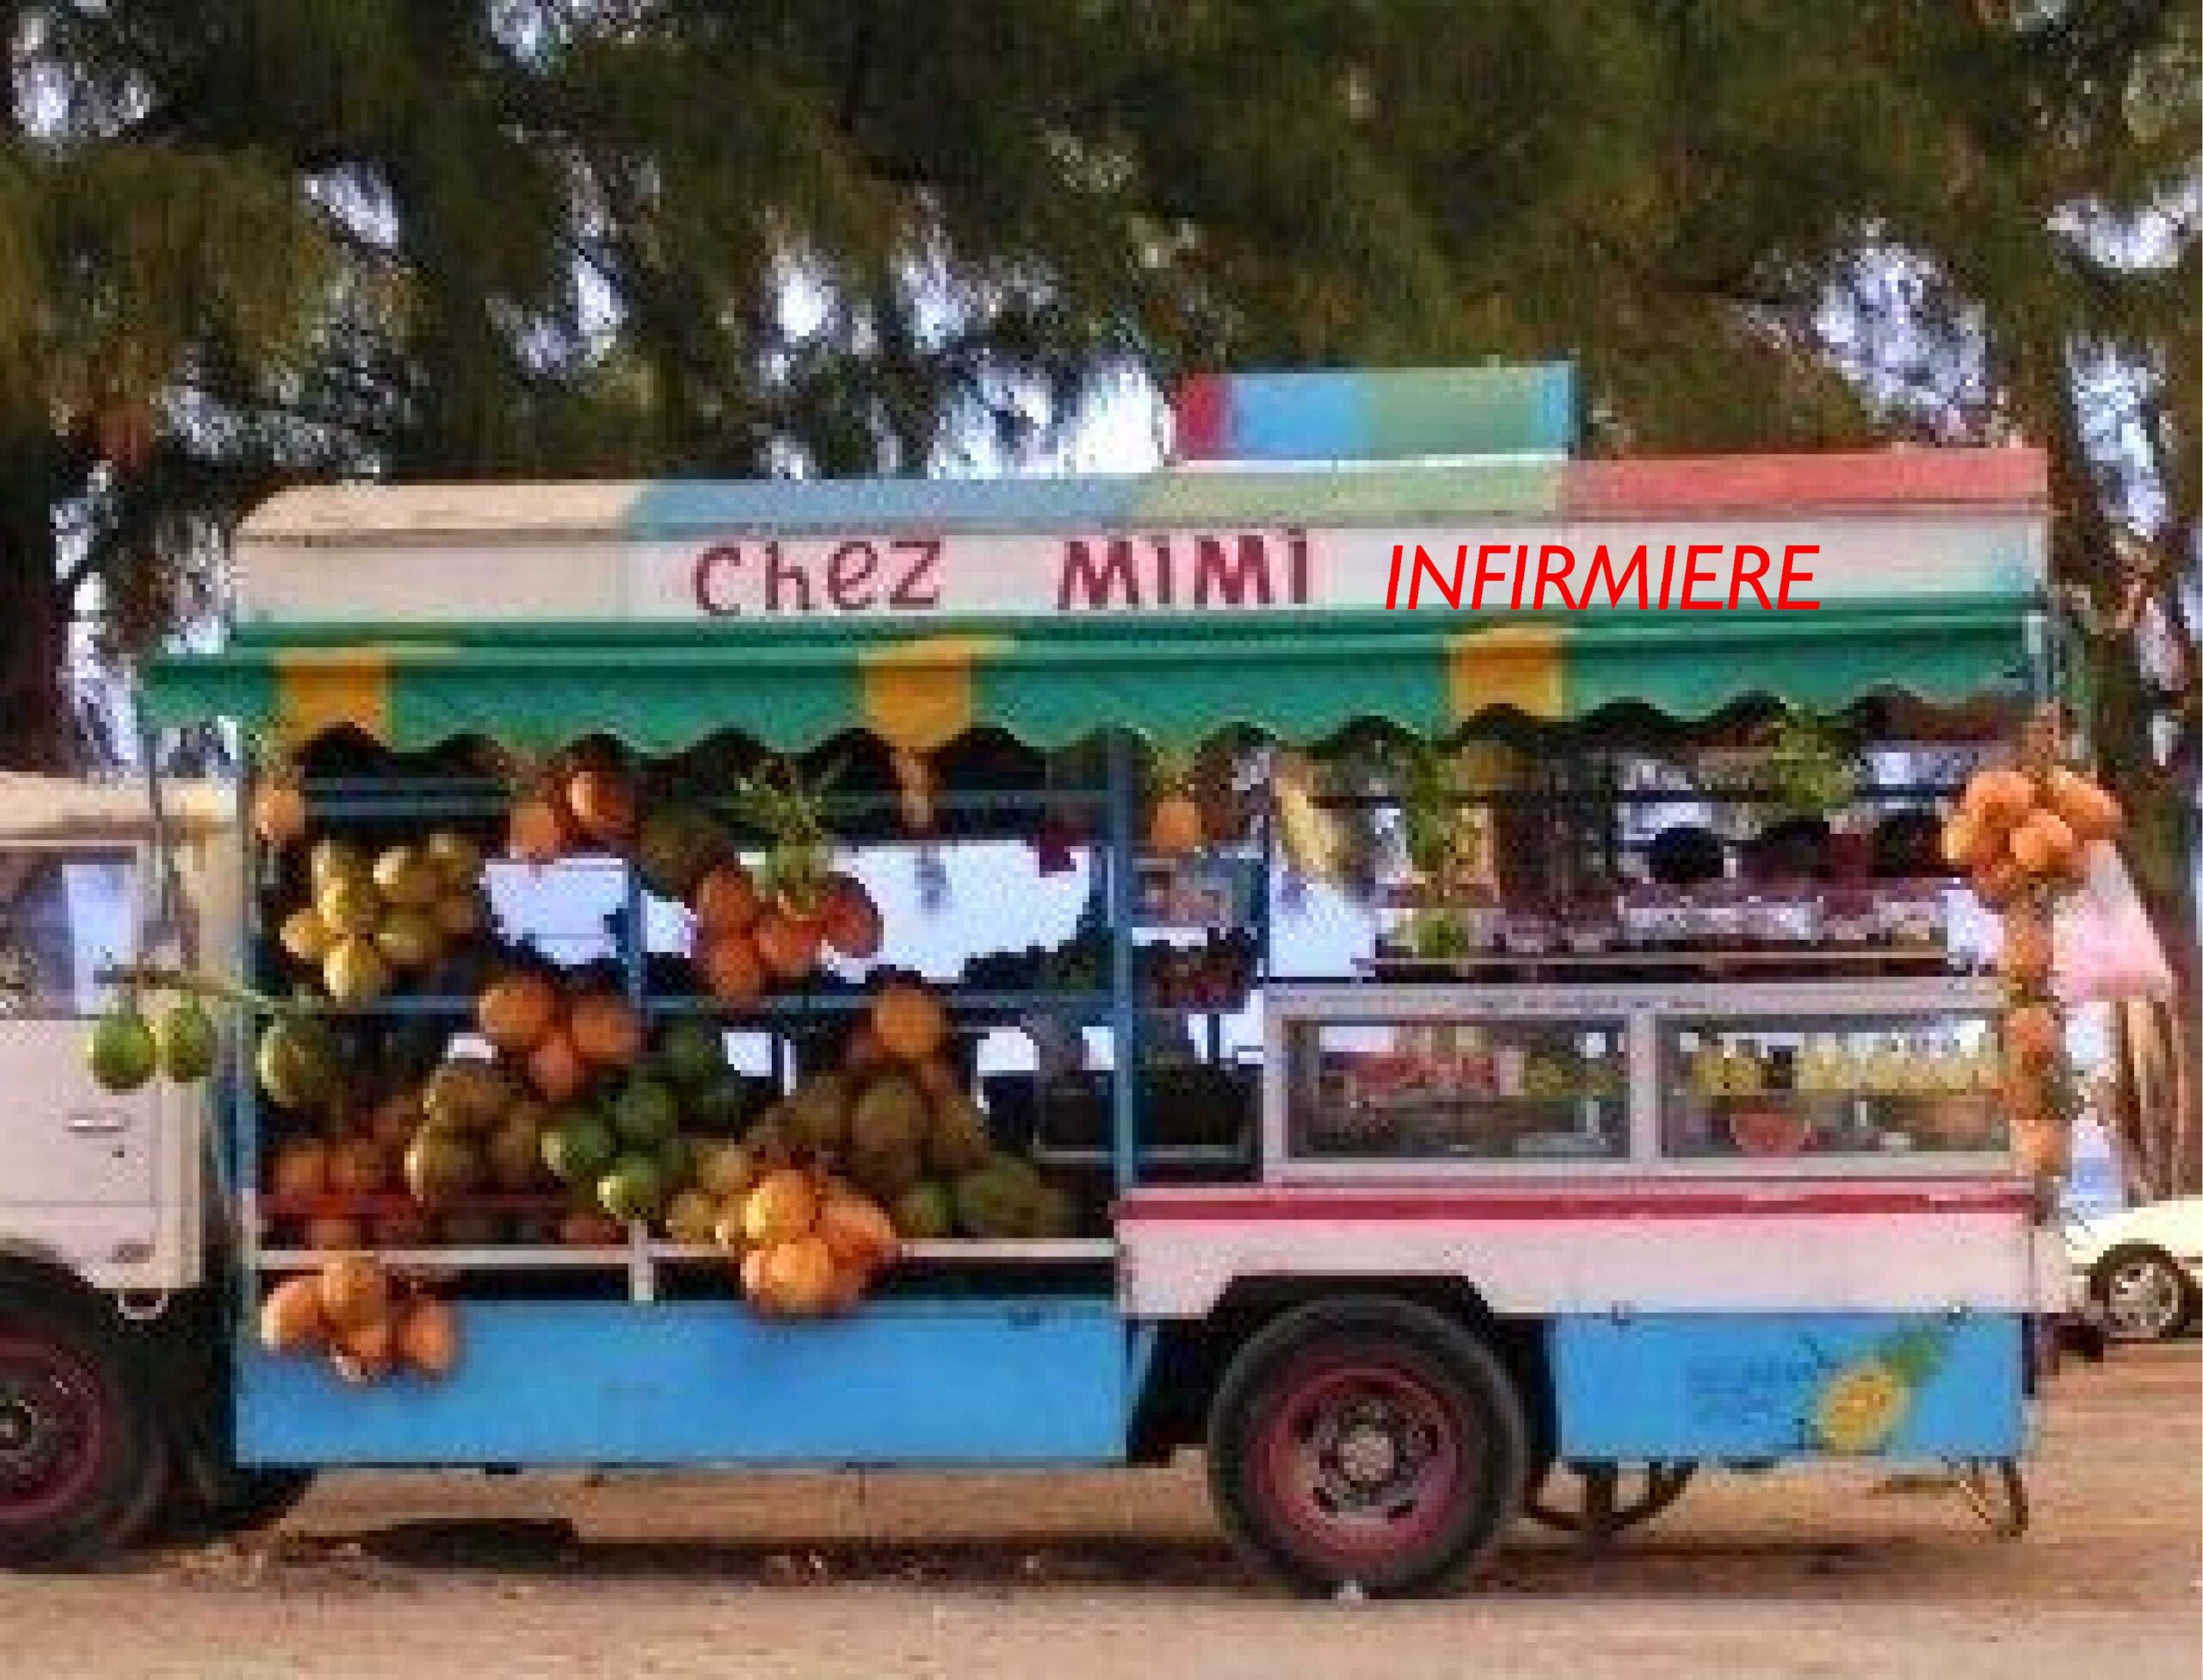 Un camion transportant toutes sortes de denrées comestibles avec en haut l'inscription "Chez MIMI" avec, ajouté en route "infirmière"